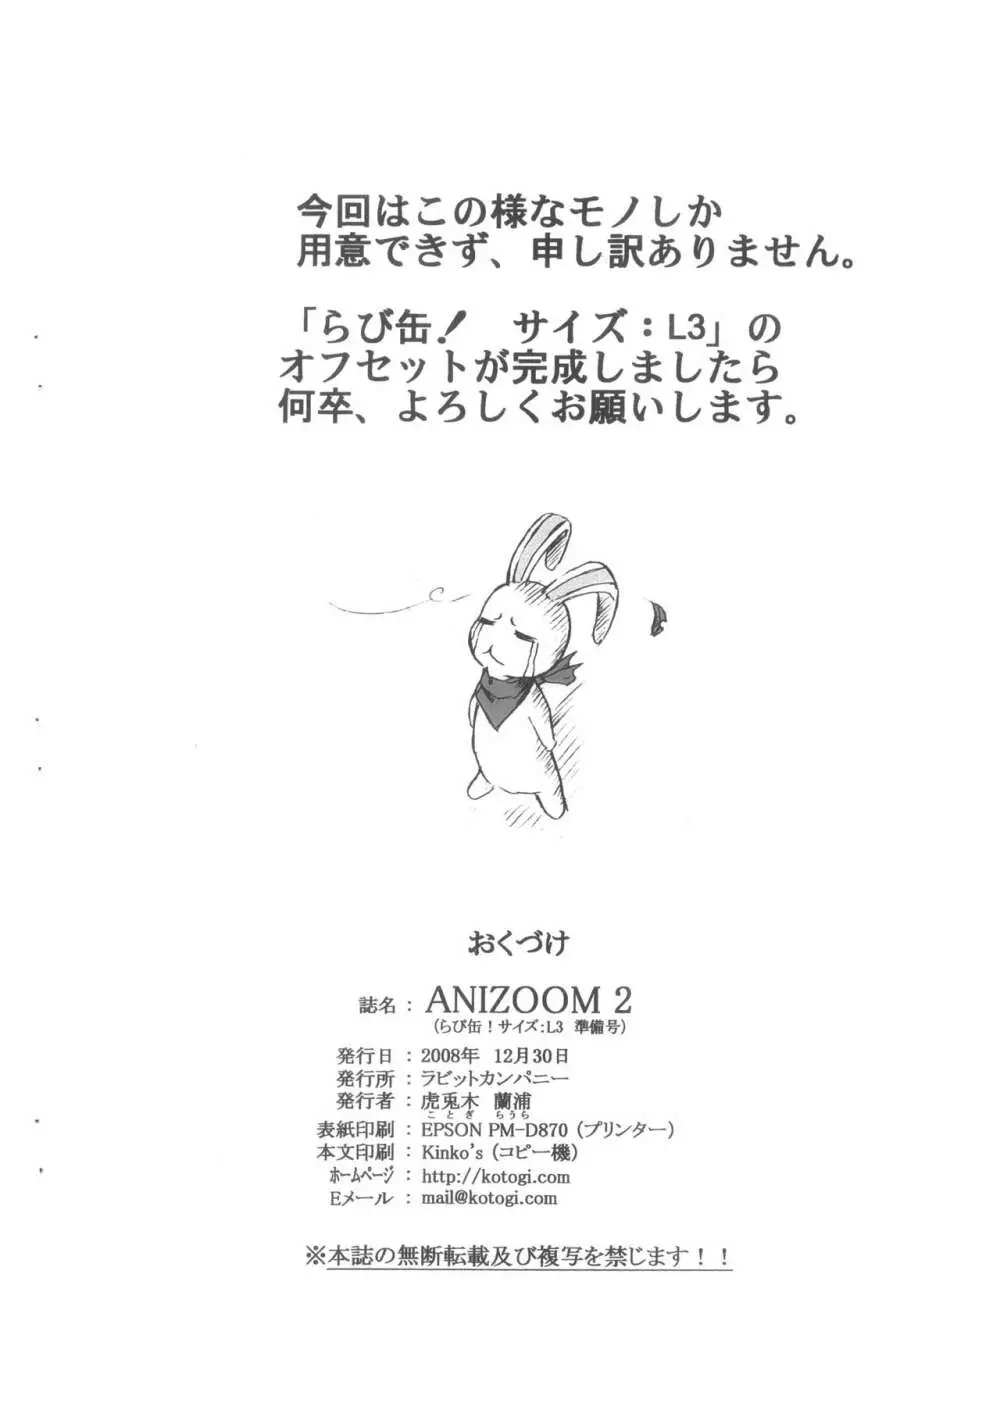 ANIZOOM 2 らび缶! サイズ:L3 準備号 15ページ